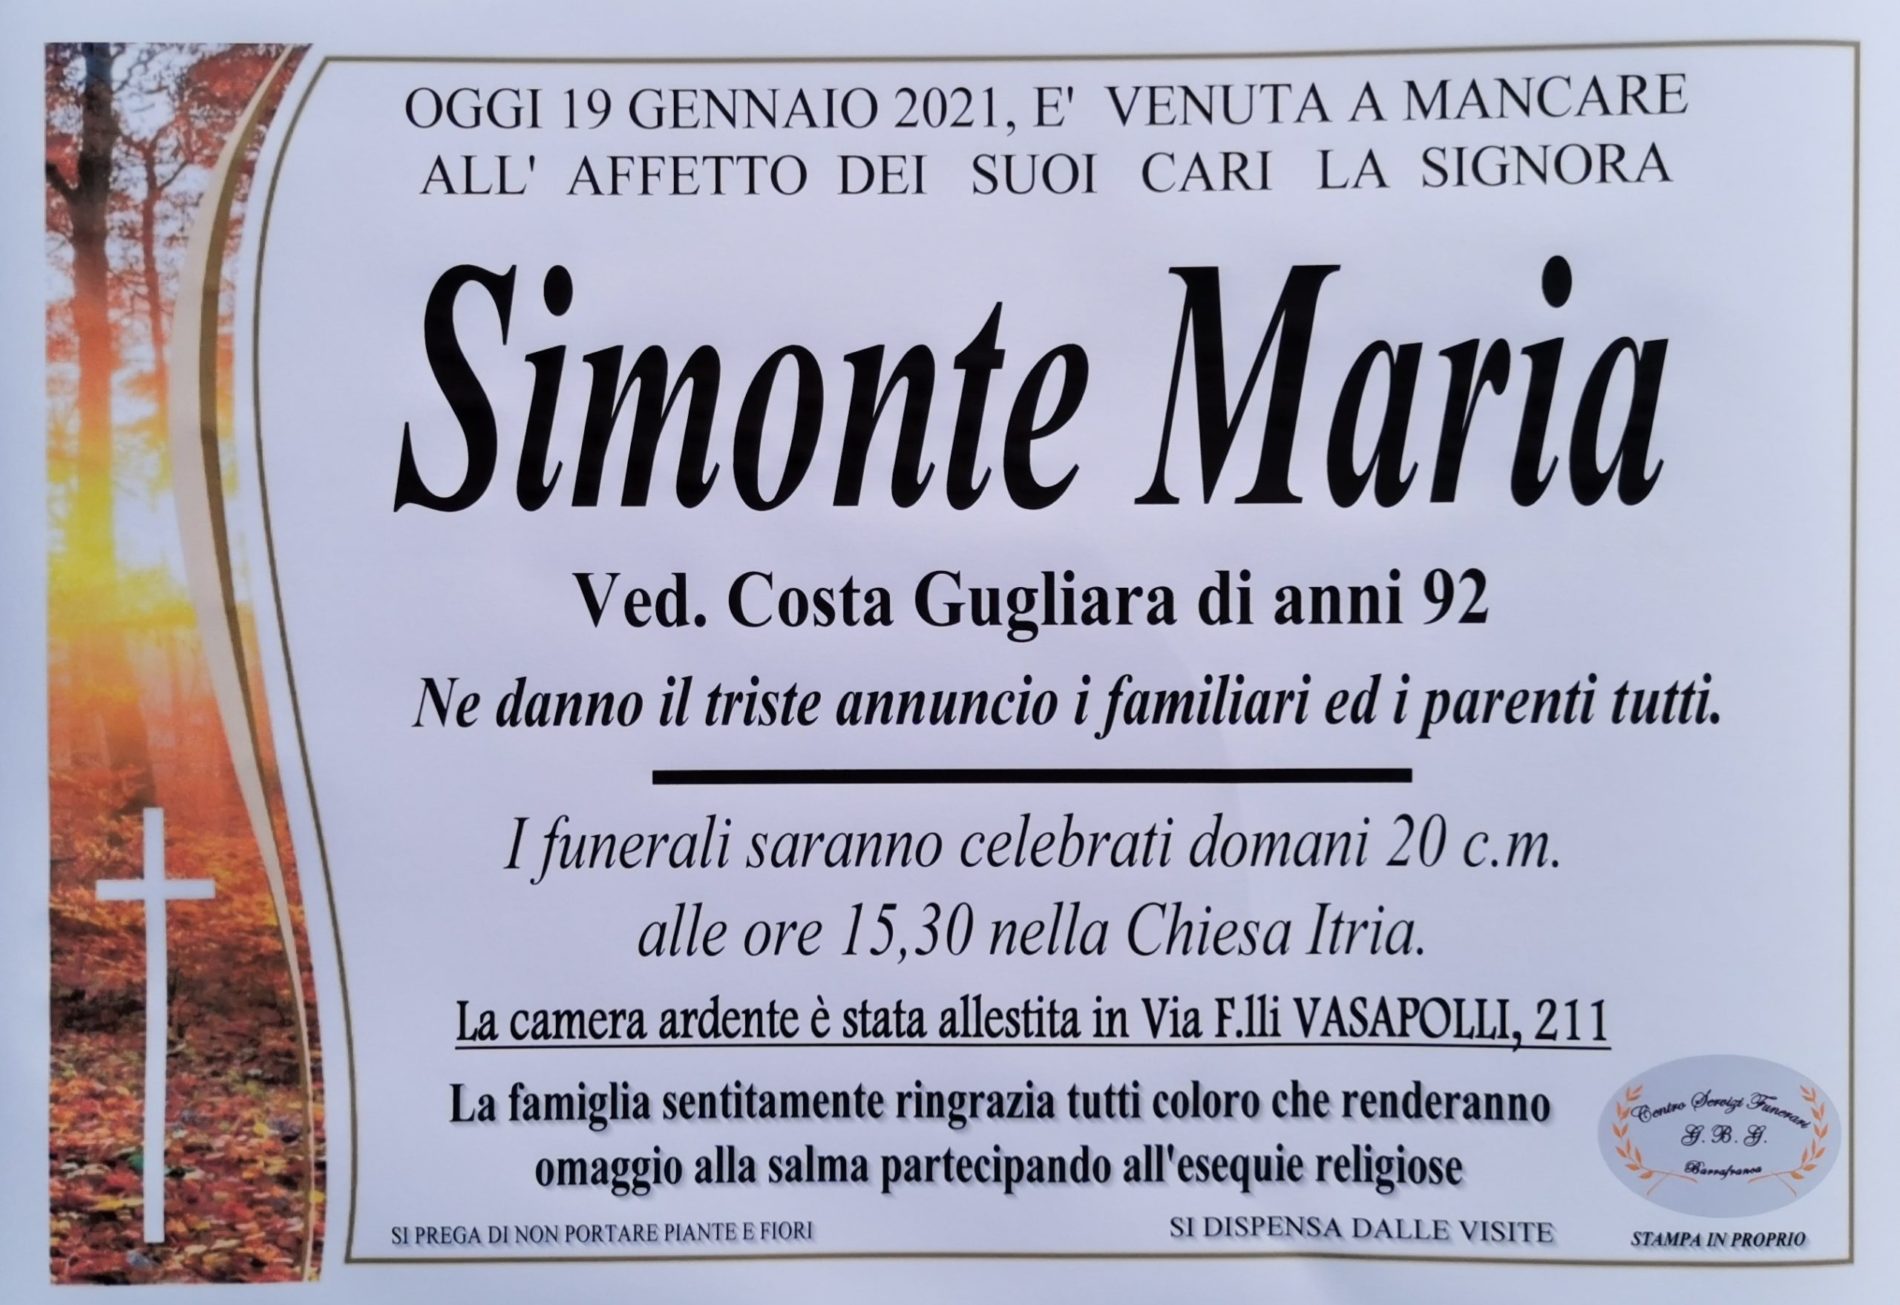 Annuncio servizi funerari agenzia G.B.G. sig.ra Simonte Maria ved Costa Gugliara di anni 92